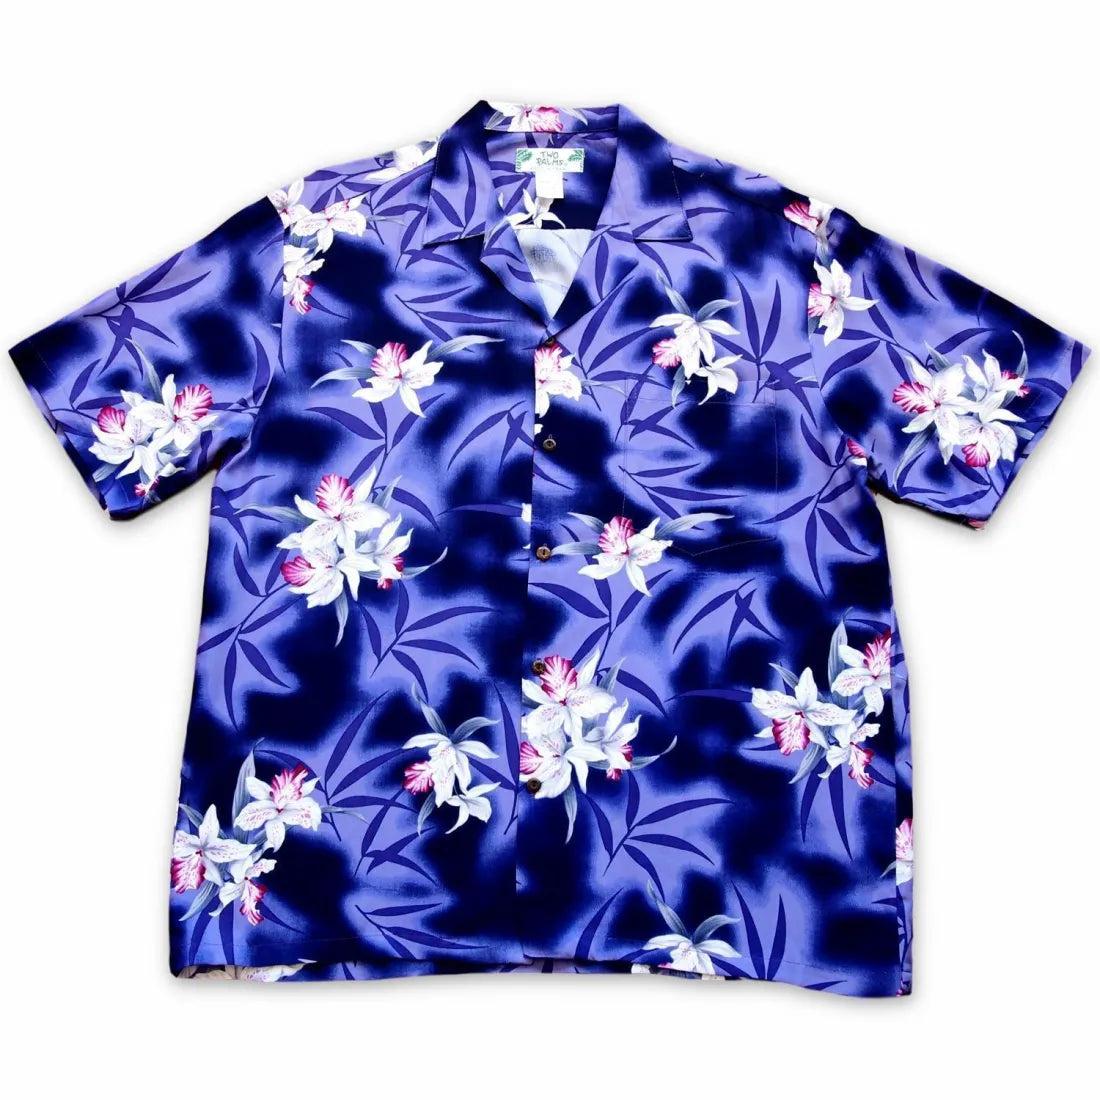 Poipu Purple Hawaiian Rayon Shirt - Made In Hawaii